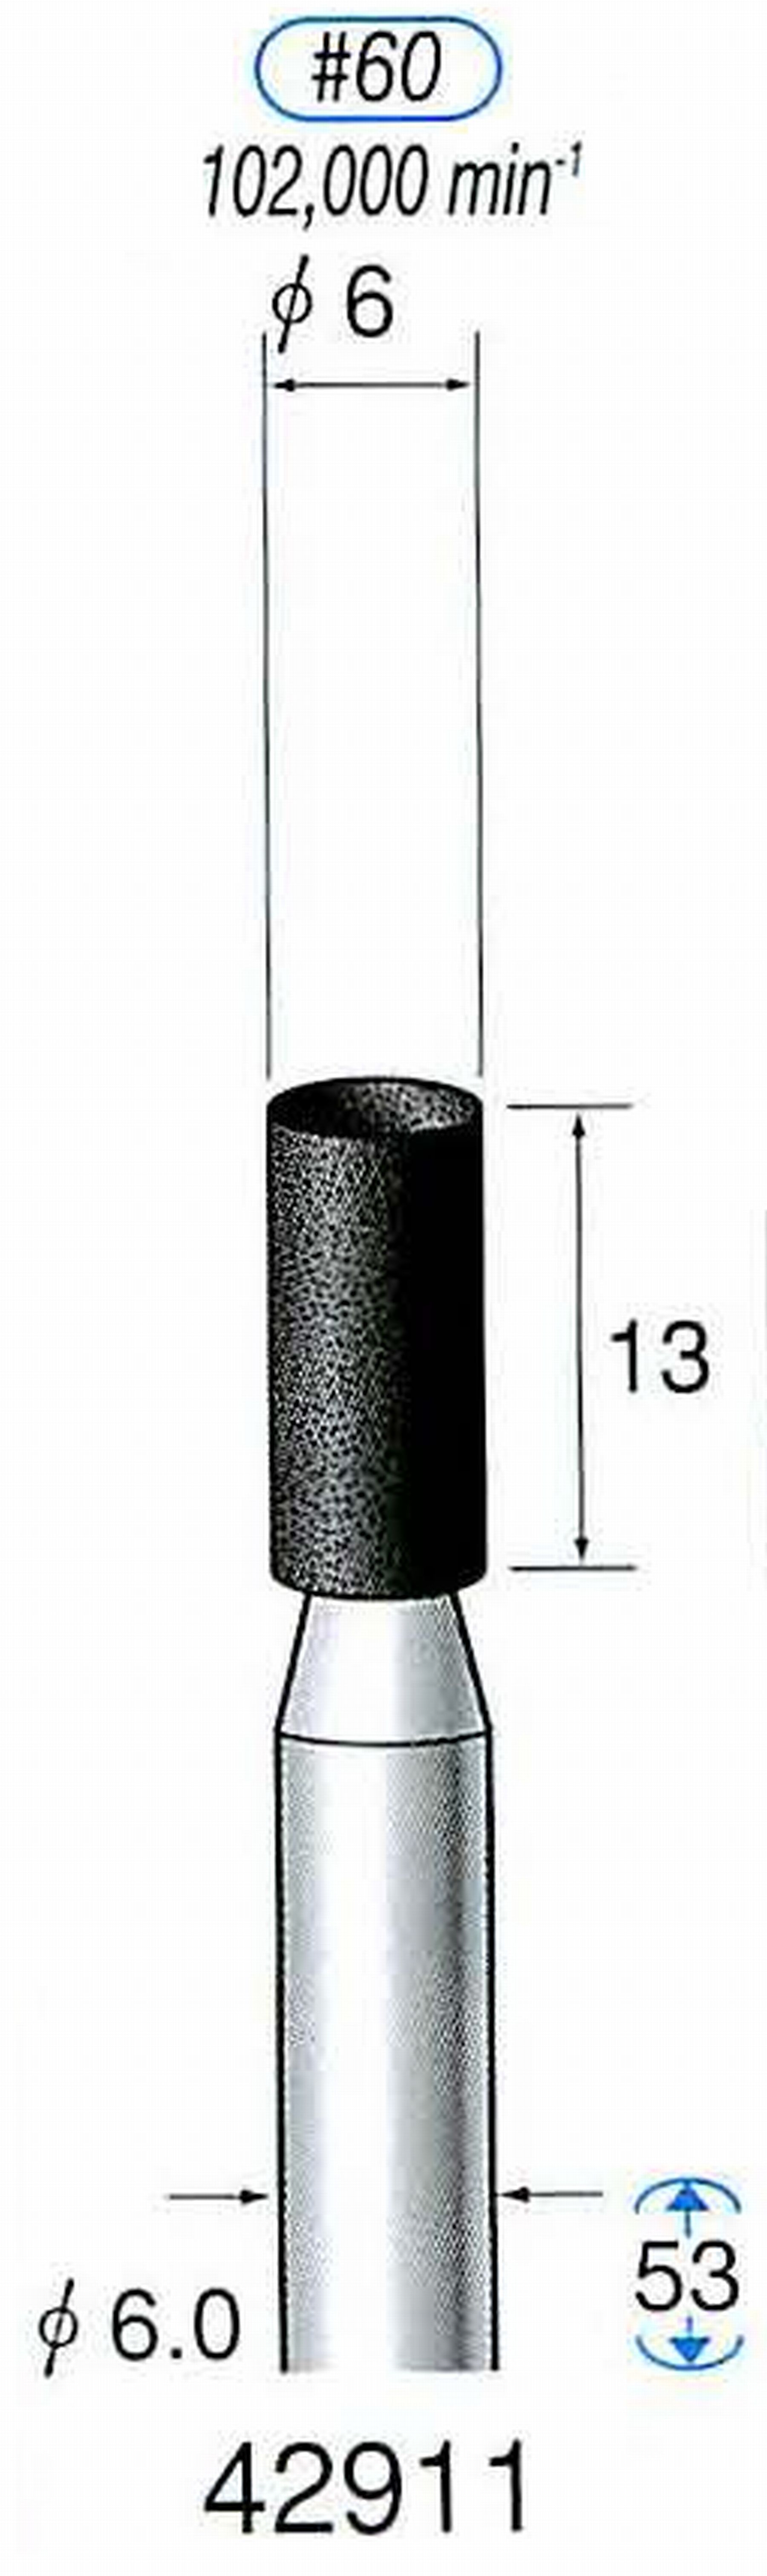 ナカニシ/NAKANISHI 軸付砥石(A砥粒) ブラック砥石 軸径(シャンク) φ6.0mm 42911